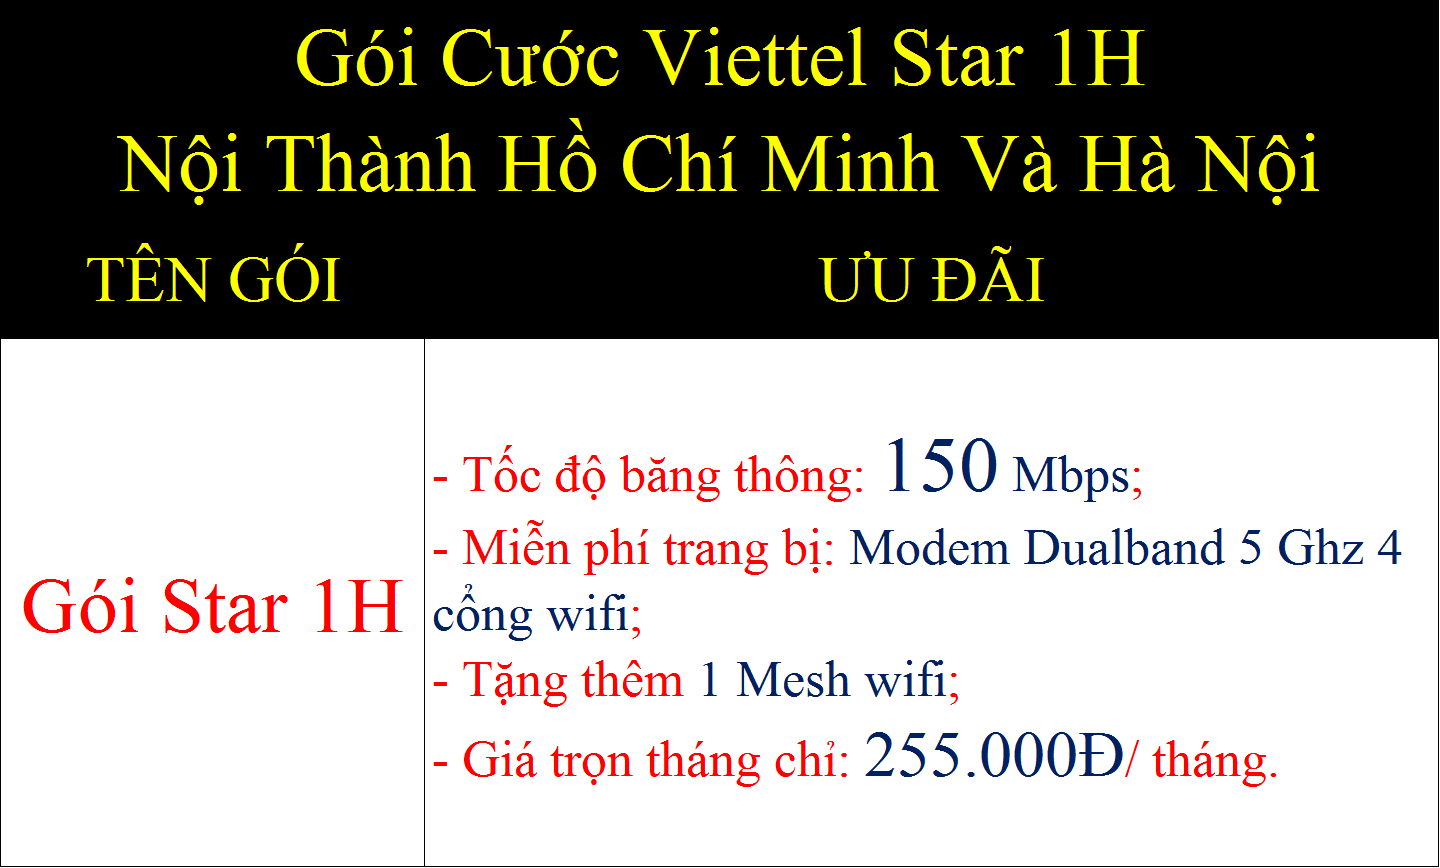 Gói cước Viettel Star 1H nội thành Hồ Chí Minh và Hà Nội